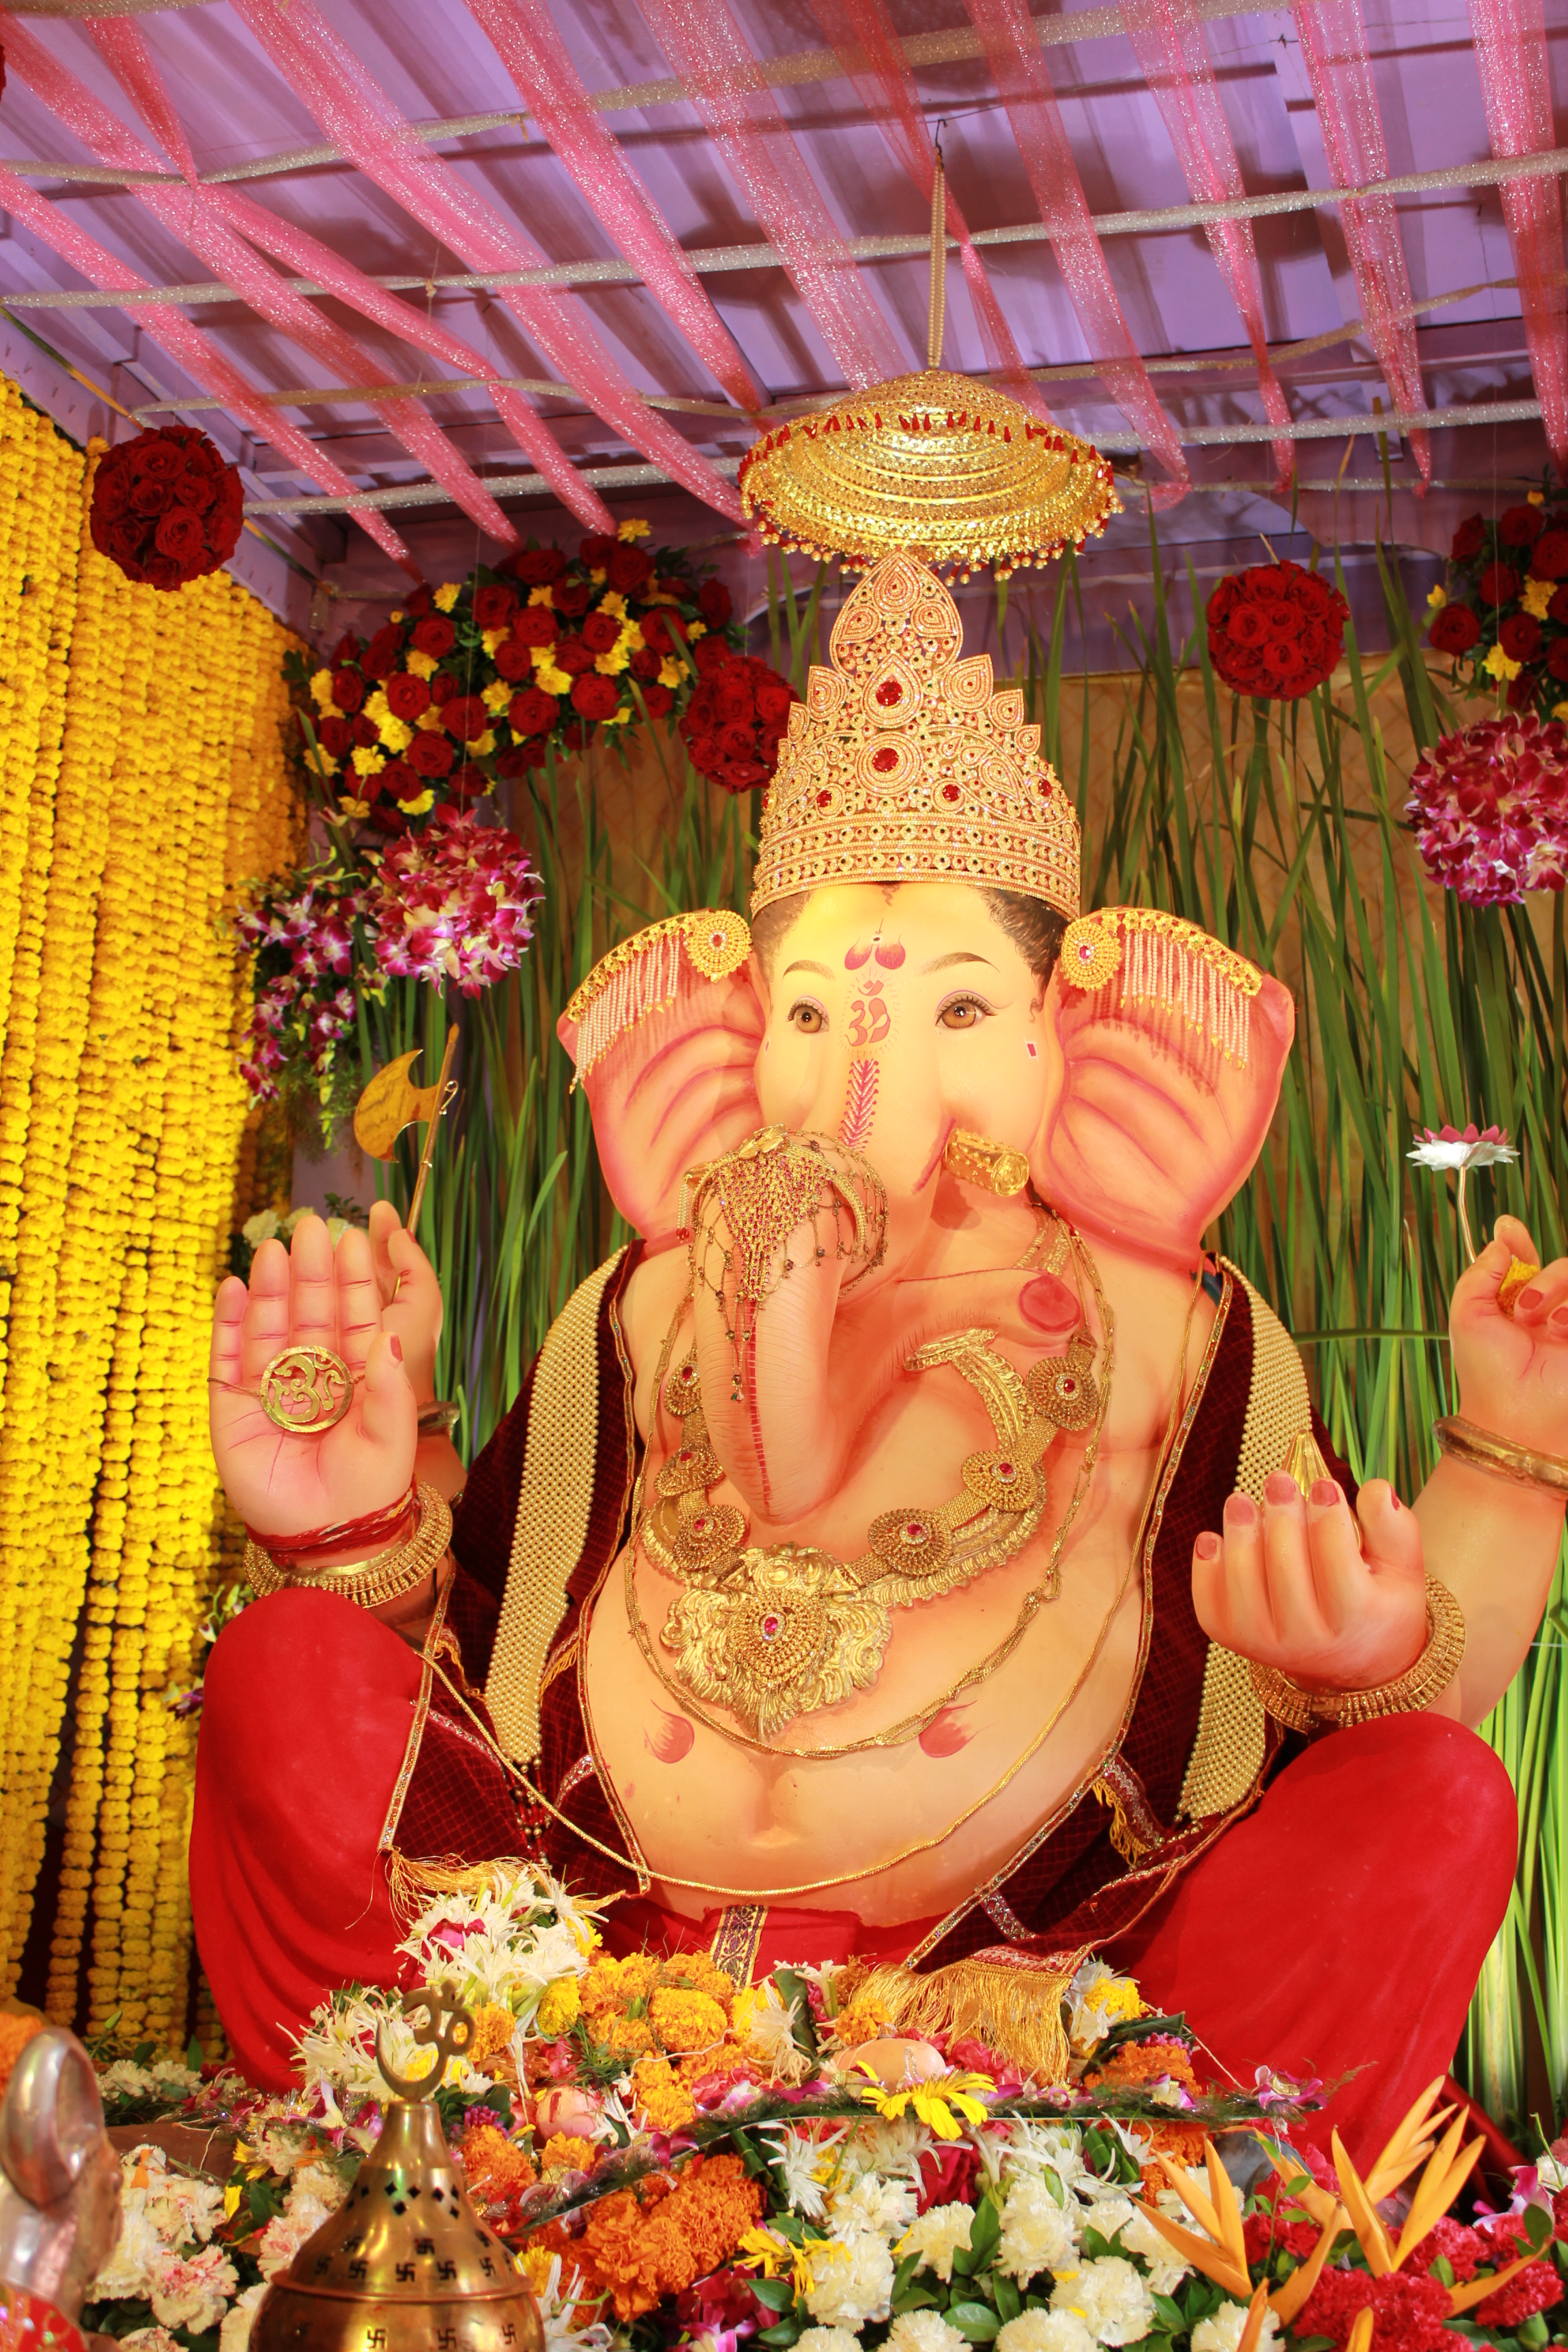 象の神様とは？インドのお祭り「ガネーシャ・チャトゥルティー